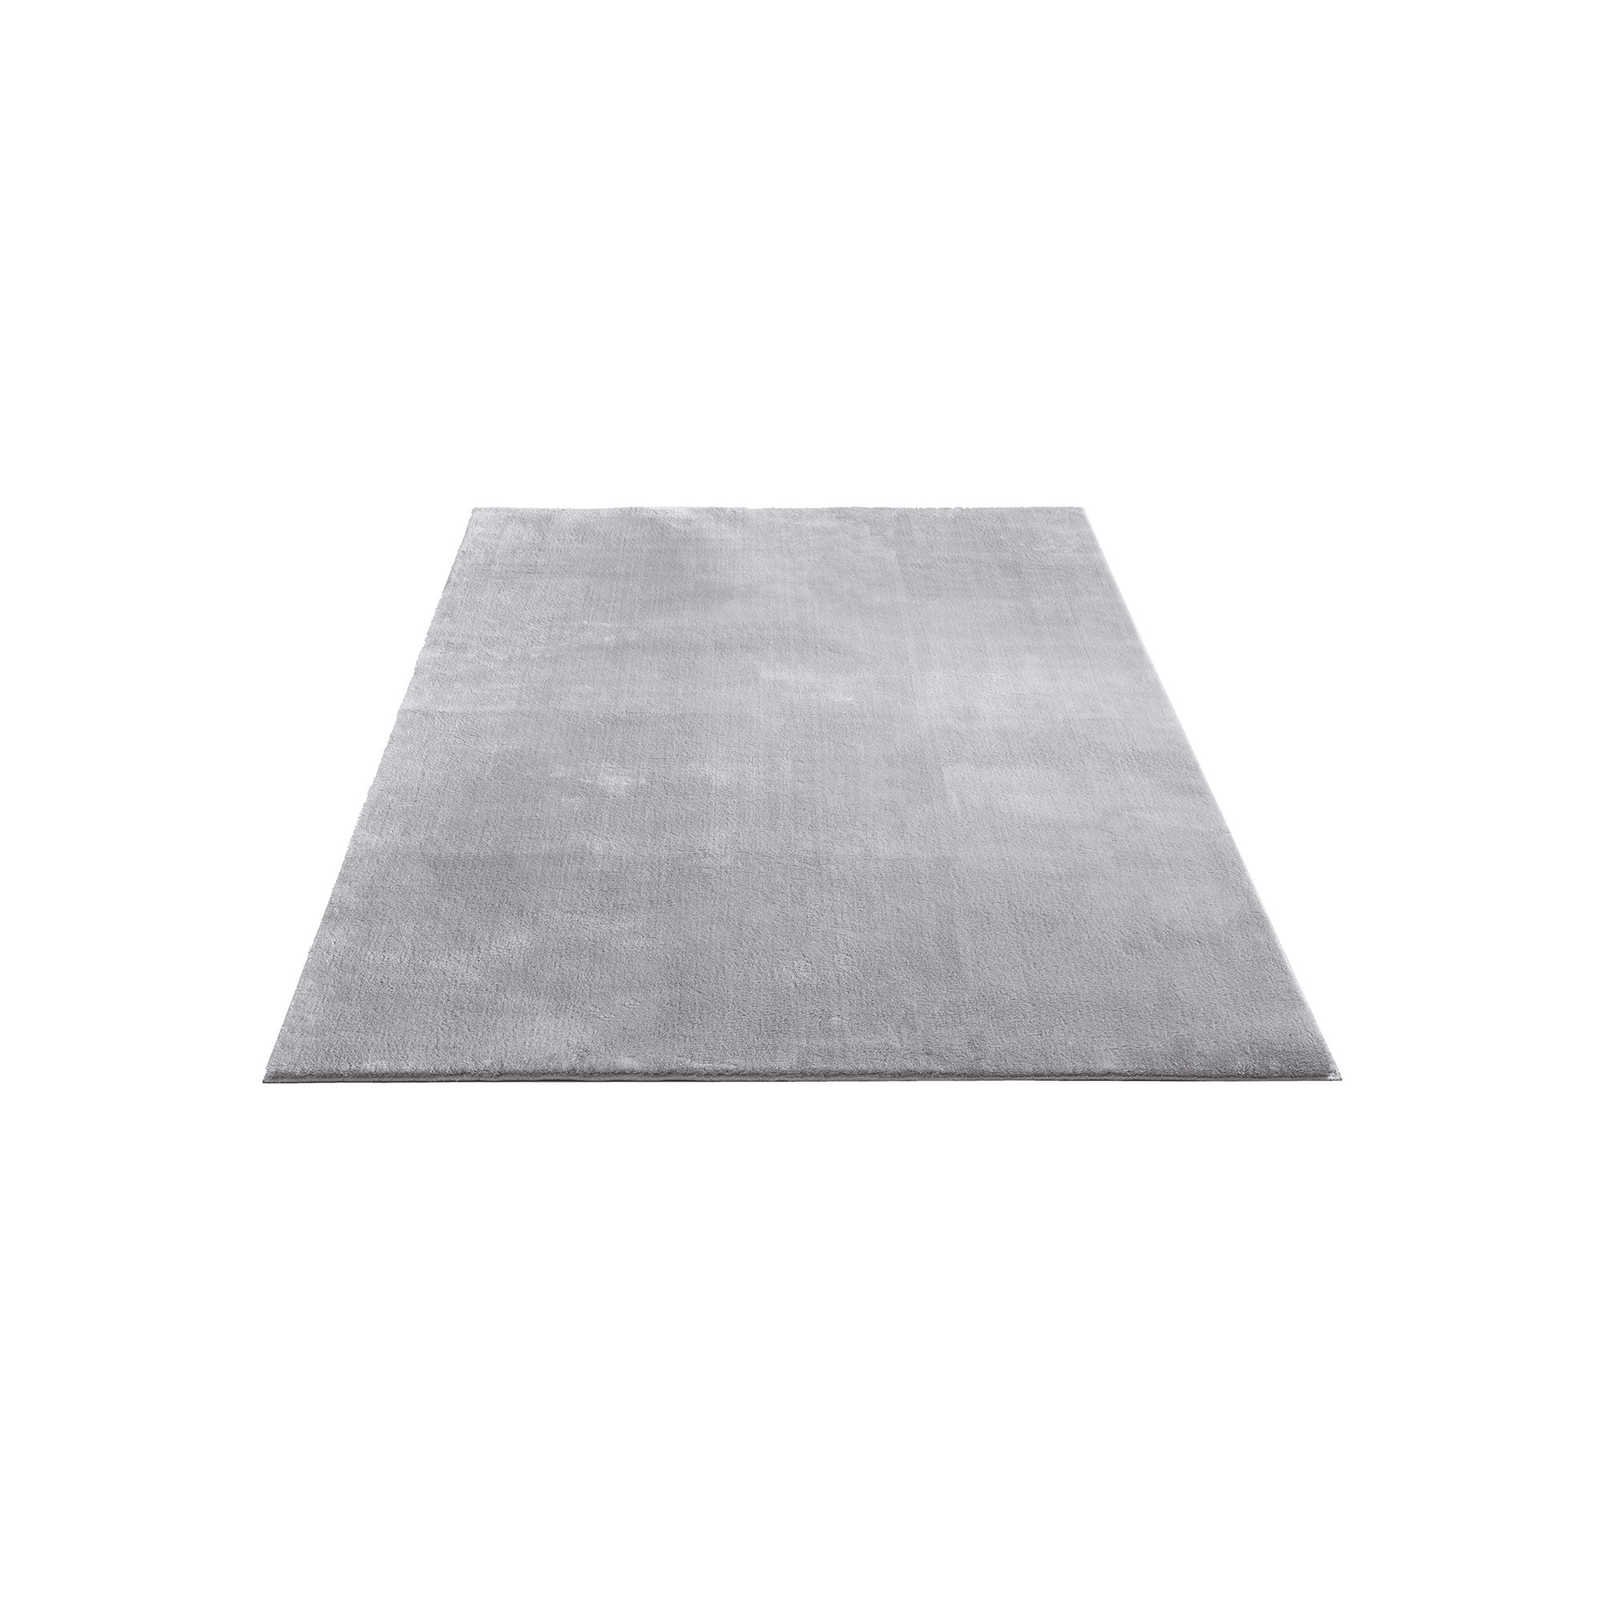 Fijn hoogpolig tapijt in grijs - 230 x 160 cm
